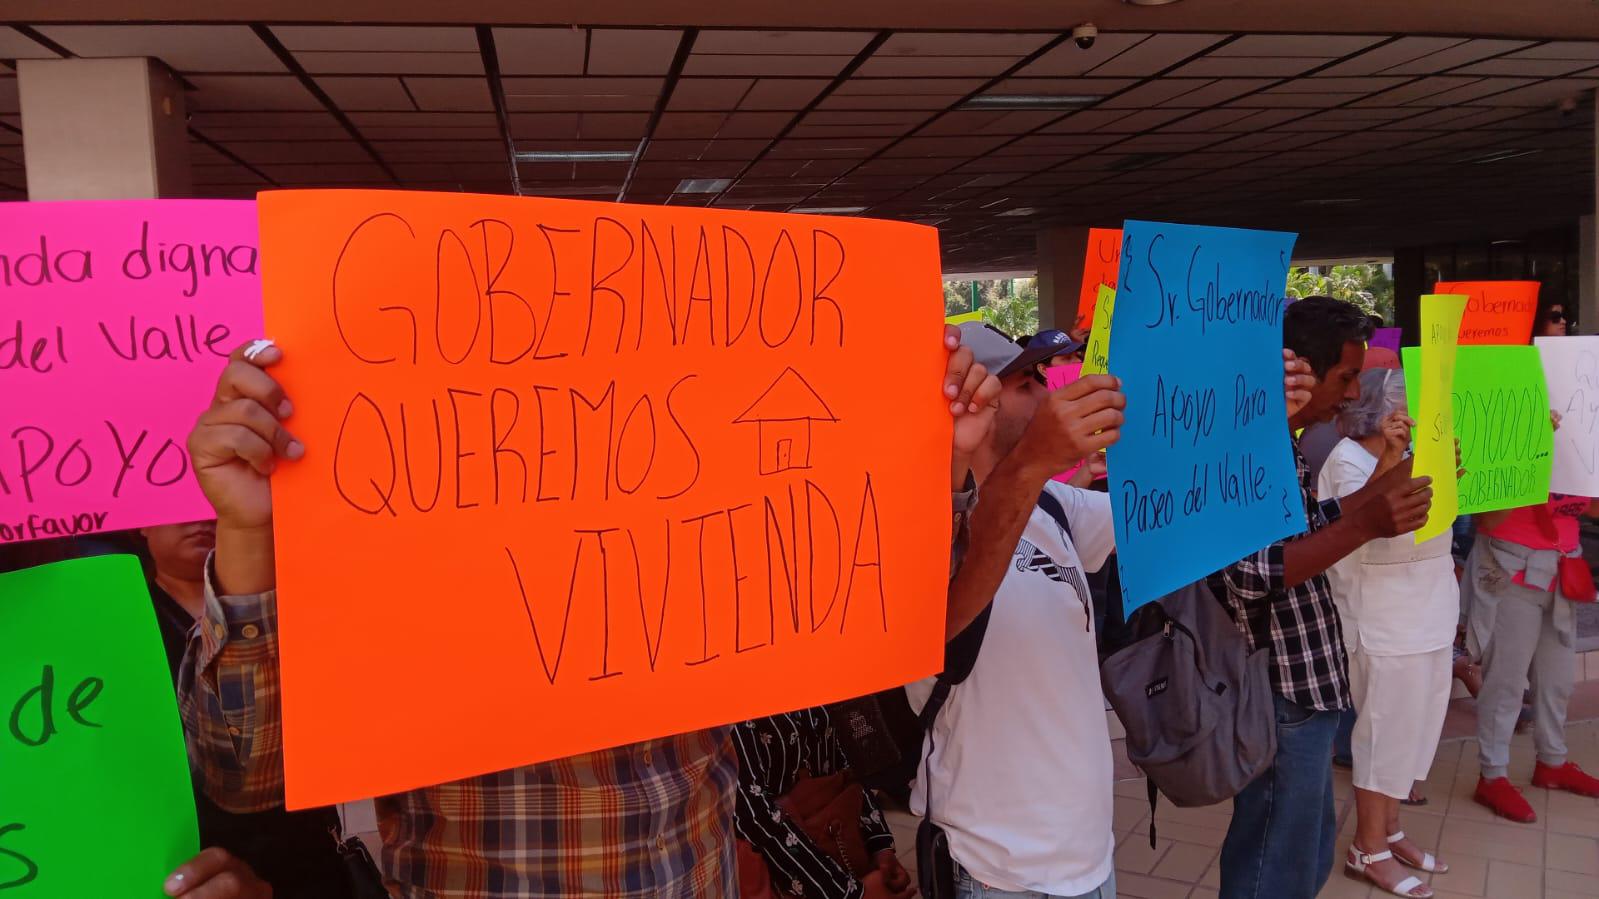 $!Personas sin vivienda piden atención del Gobierno de Sinaloa